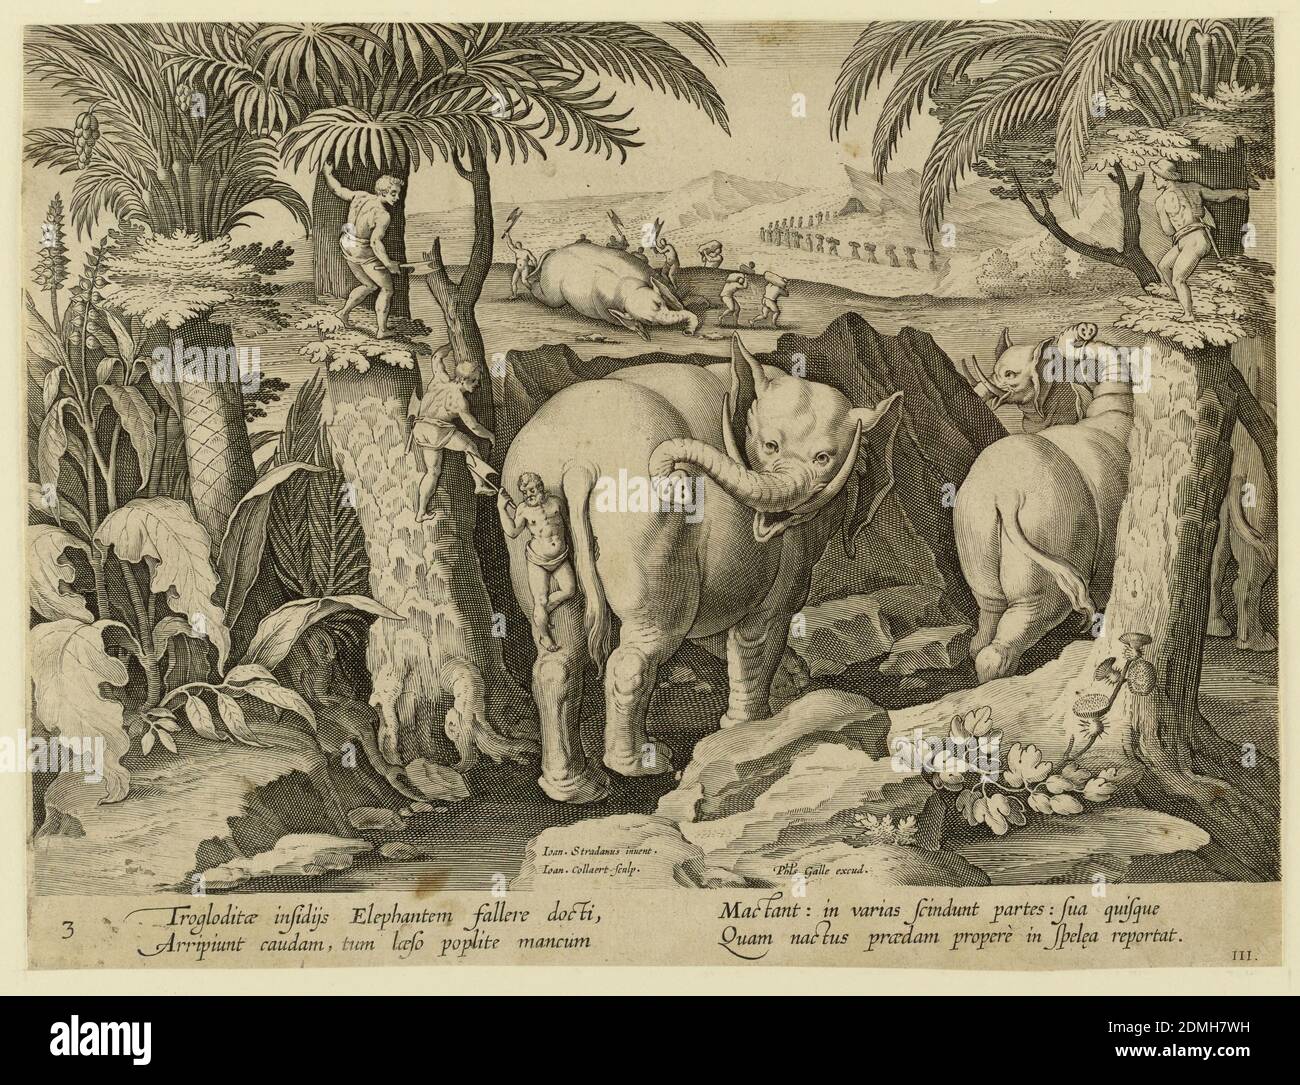 Cavemen Chasing Elephants, Platte 3 aus der venationes Ferarum, Avium, Piscium-Serie, Jan van der Straet, genannt Stradanus, Flämisch, 1523–1605, Jan Collaert II, Flämisch, 1560 - 1628, Philips Galle, Flämisch, 1537 - 1612, Gravur auf Papier, Horizontales Rechteck. In der Mitte im Vordergrund wird ein Elefant von hinten von einem der Pygmäen angegriffen, während sich zwei andere darauf vorbereiten, links vom Baum zu springen. Im Hintergrund schneiden die Troglodyten den Kadaver eines Elefanten ab. In der linken Mitte: 'Ioan. Stradanus erfinden. / Ioan Collaert Sculp'; rechts von der Mitte, unten: 'Phls. Galle Stockfoto